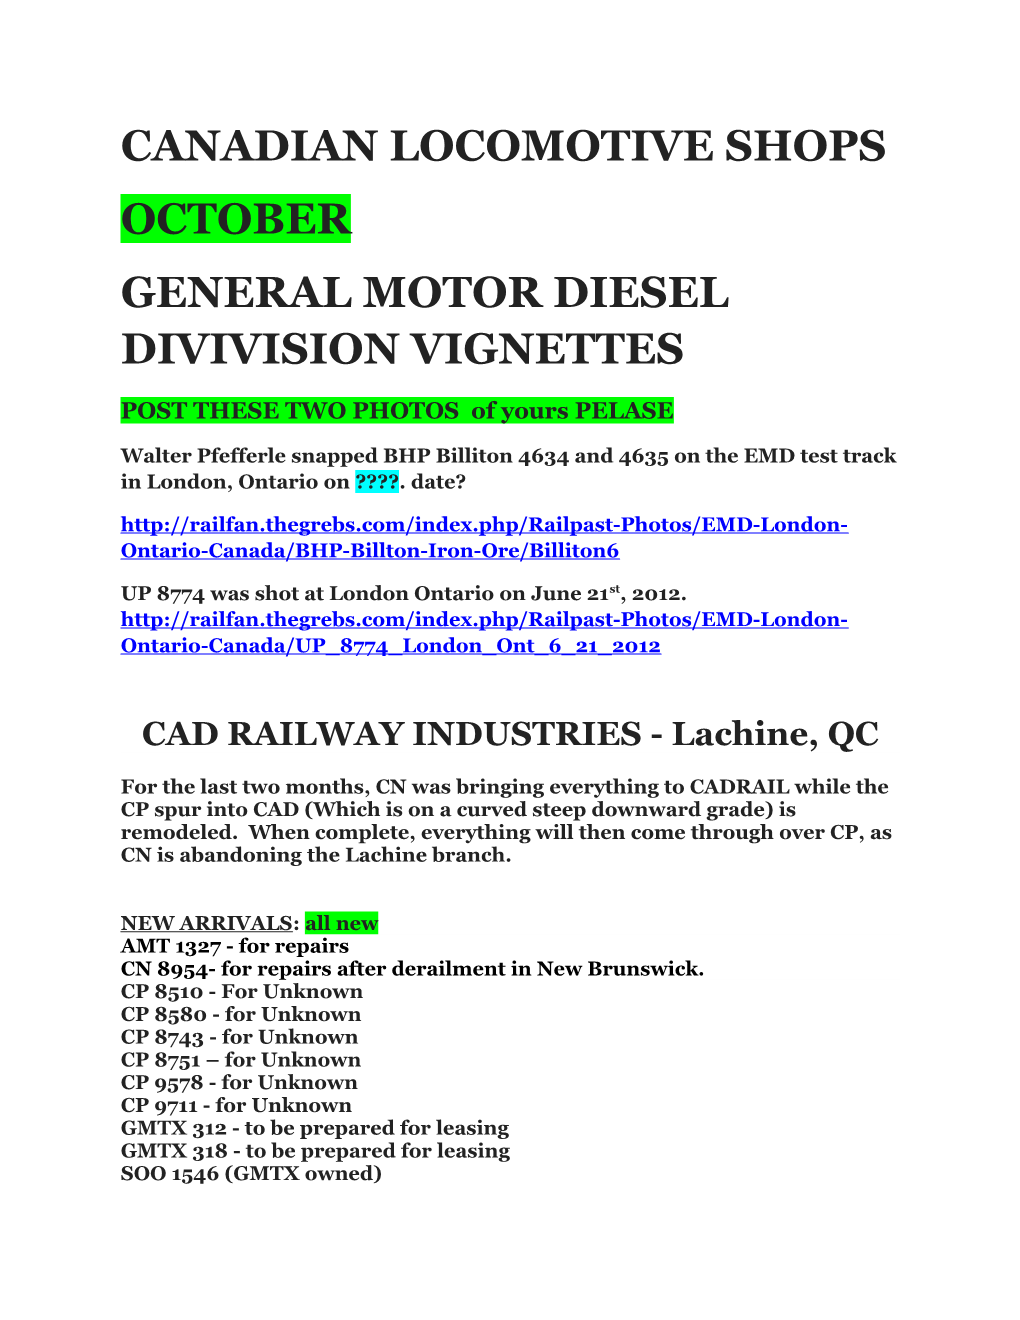 General Motor Diesel Divivision Vignettes